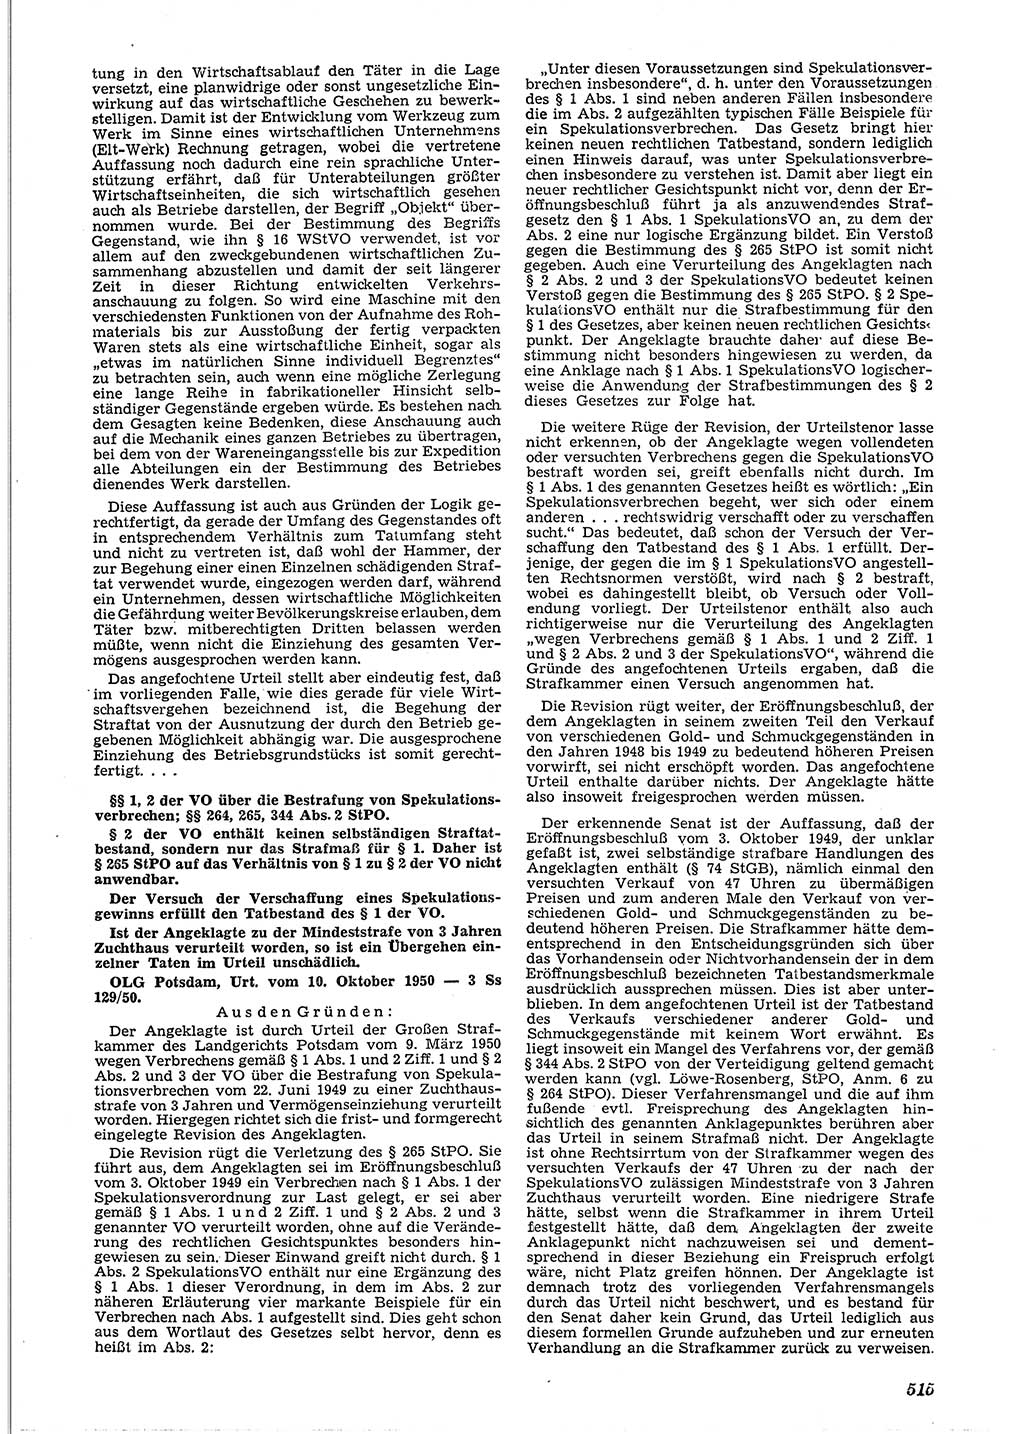 Neue Justiz (NJ), Zeitschrift für Recht und Rechtswissenschaft [Deutsche Demokratische Republik (DDR)], 4. Jahrgang 1950, Seite 515 (NJ DDR 1950, S. 515)